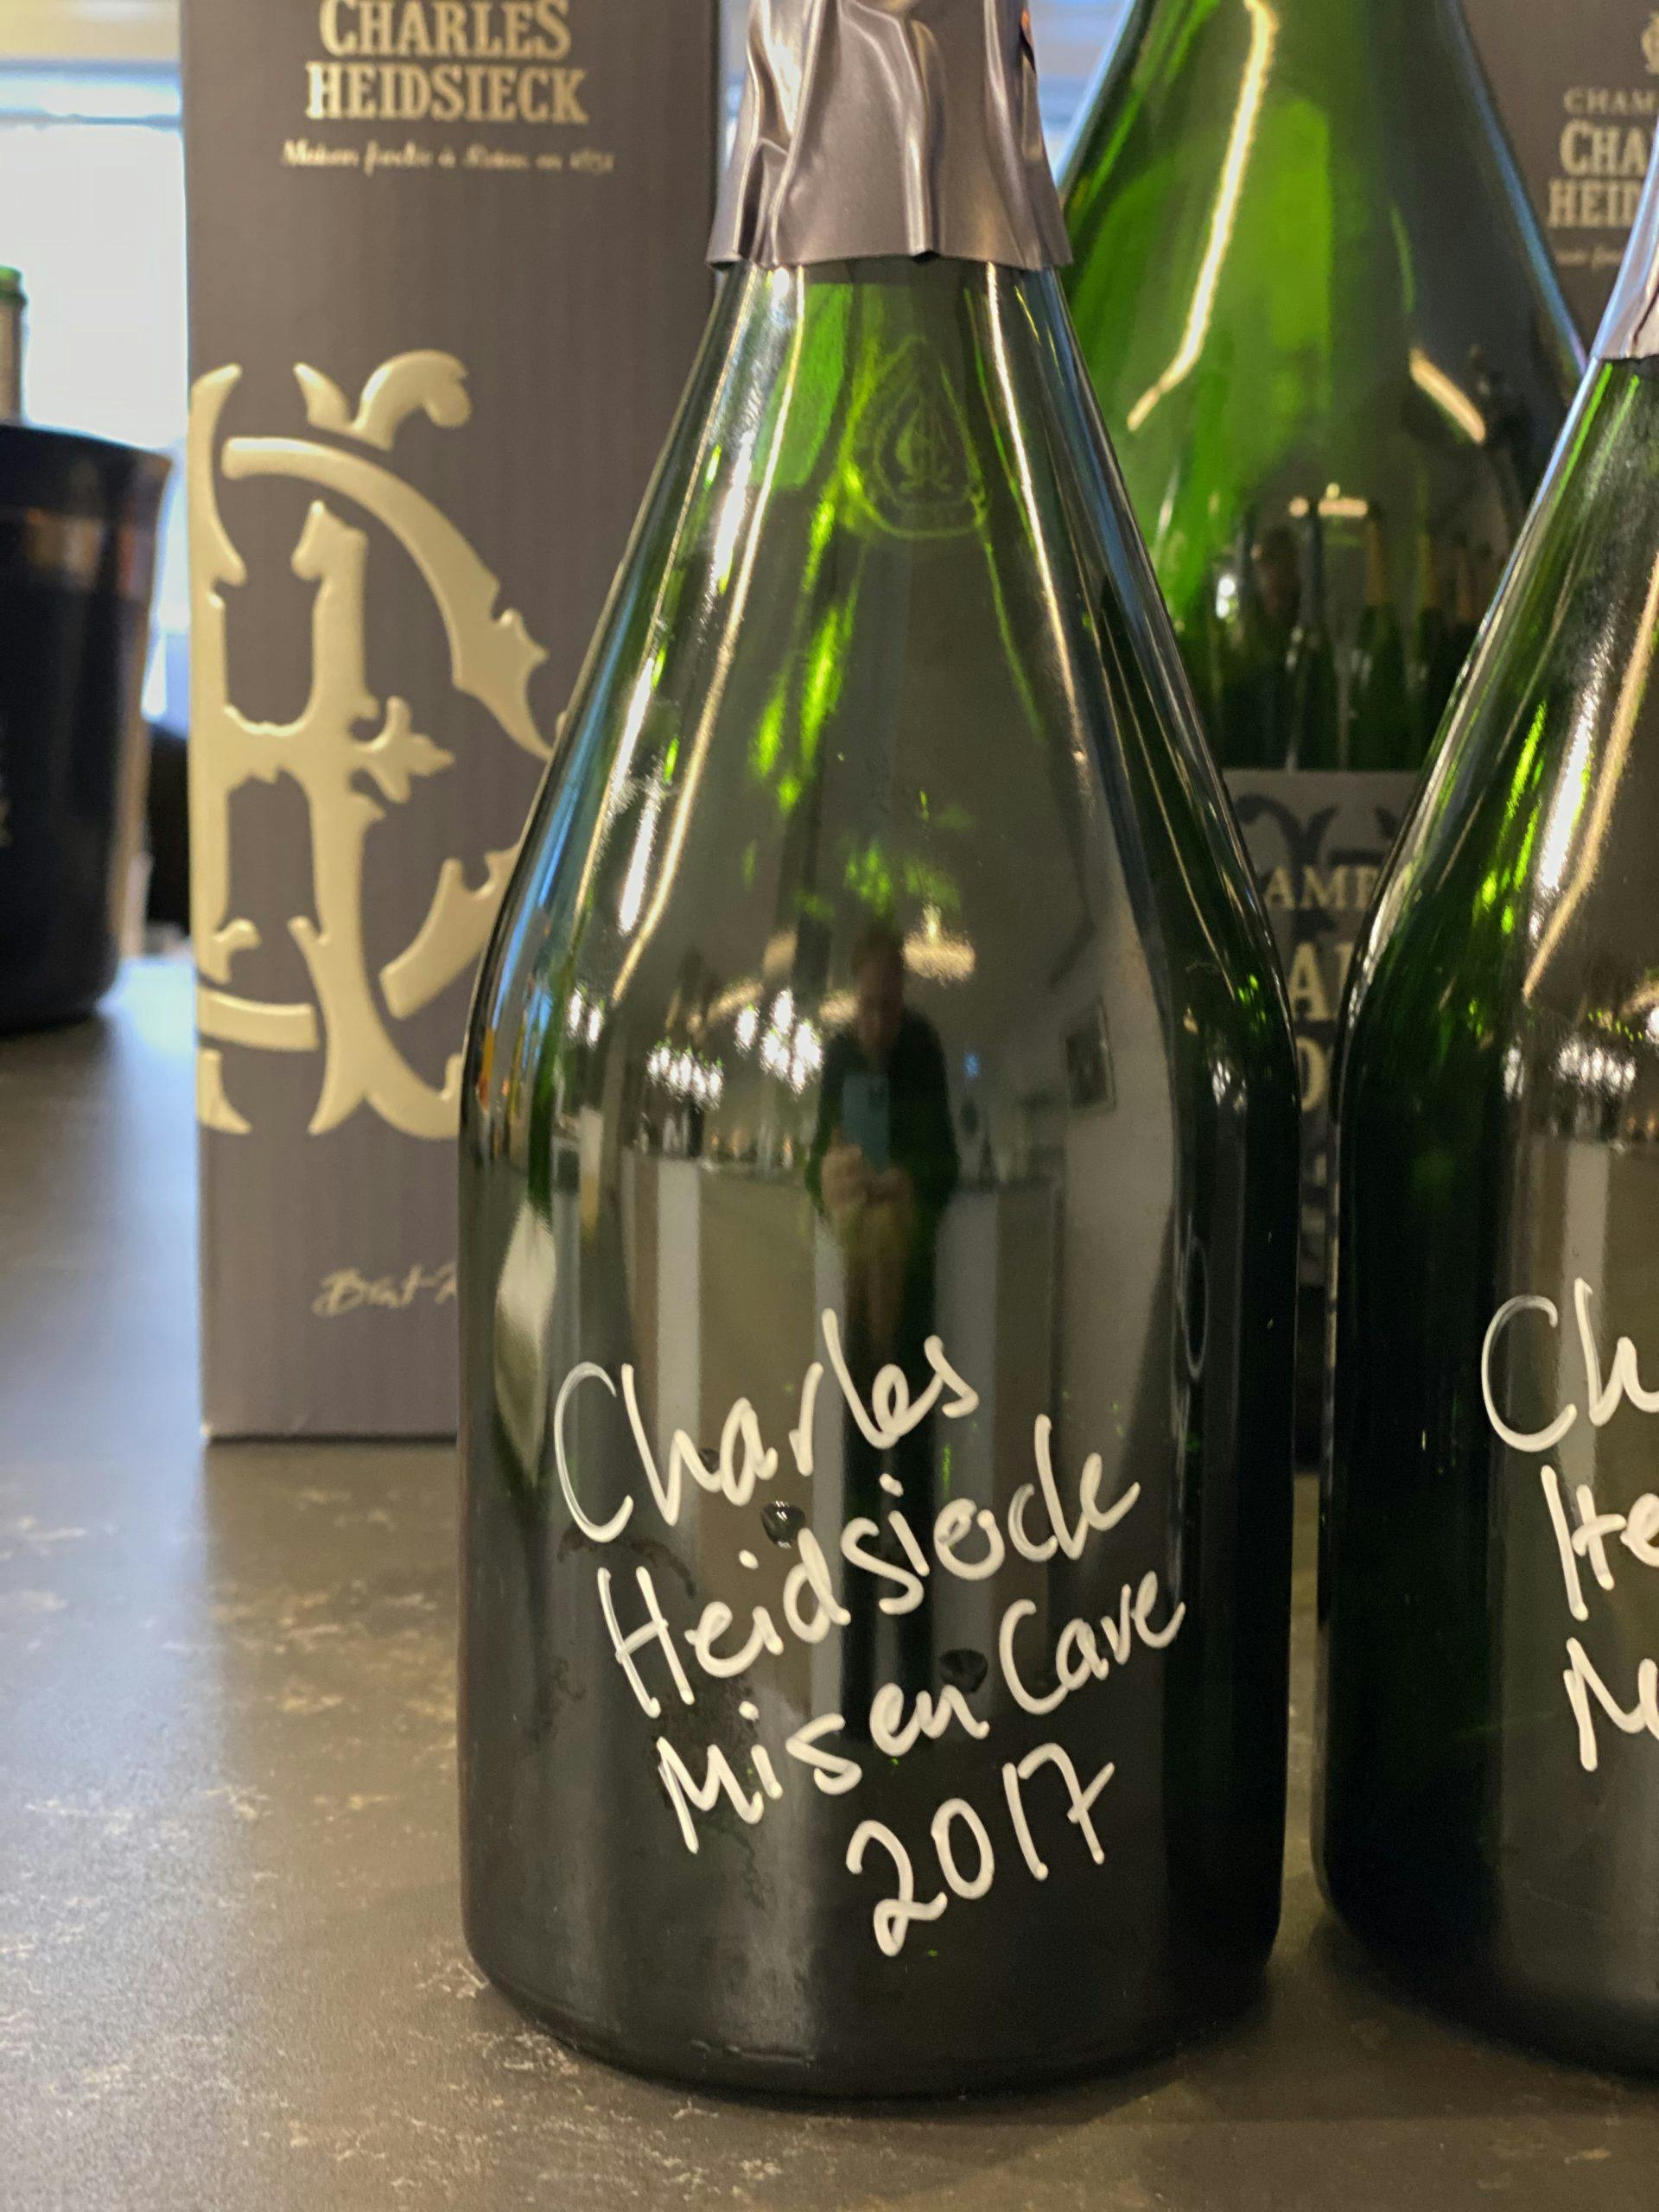 Champagne Charles Heidsieck Mis en Cave 2017